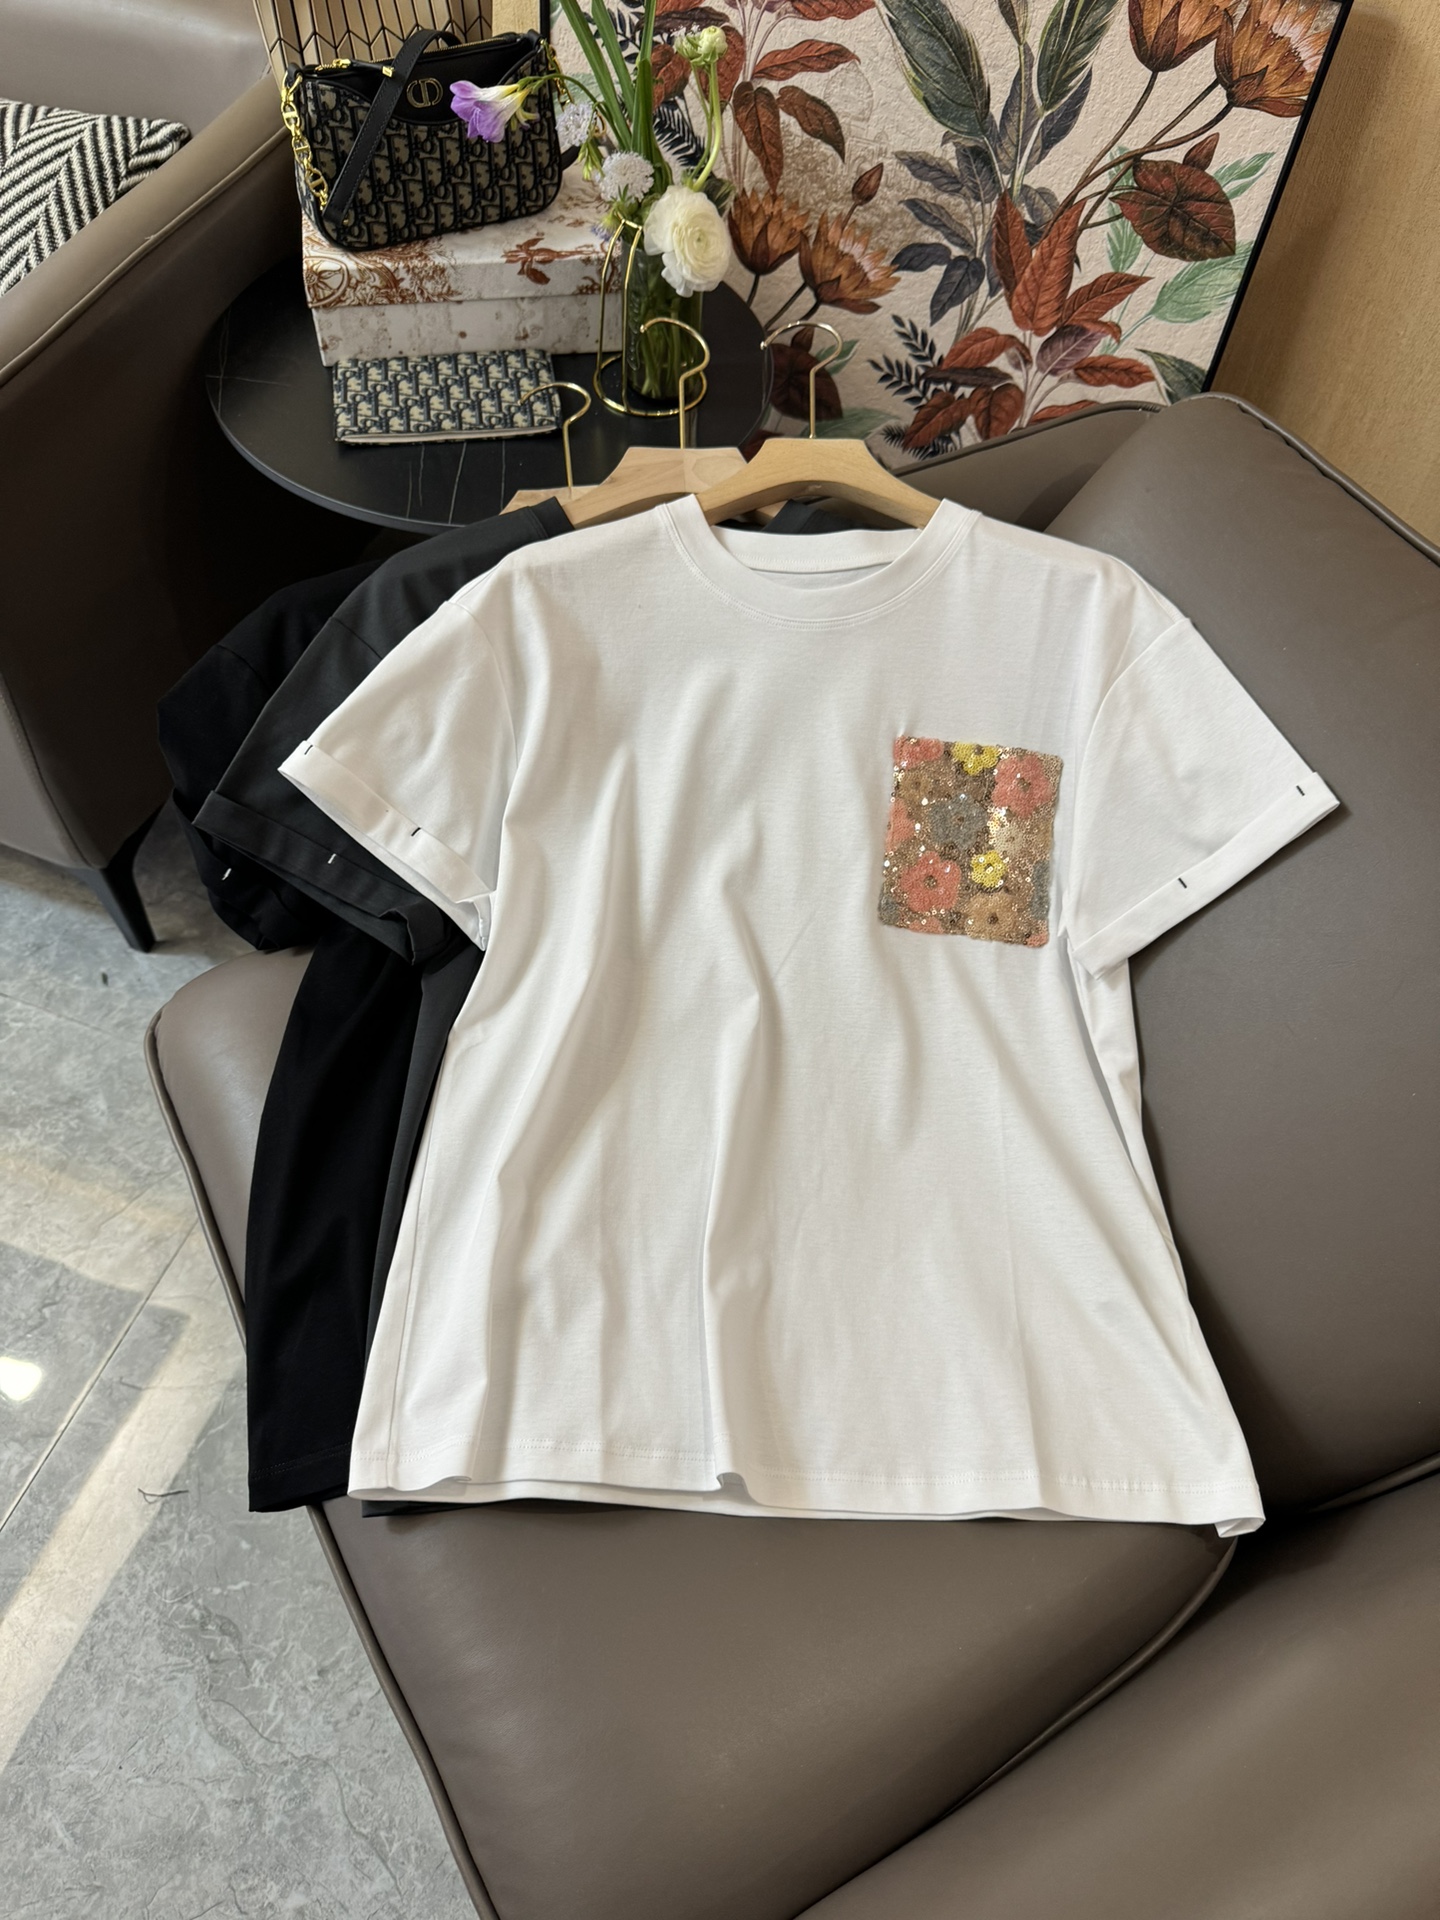 YJ015#新款T恤原创设计口袋珠片绣花短袖T恤白色黑色灰色SML